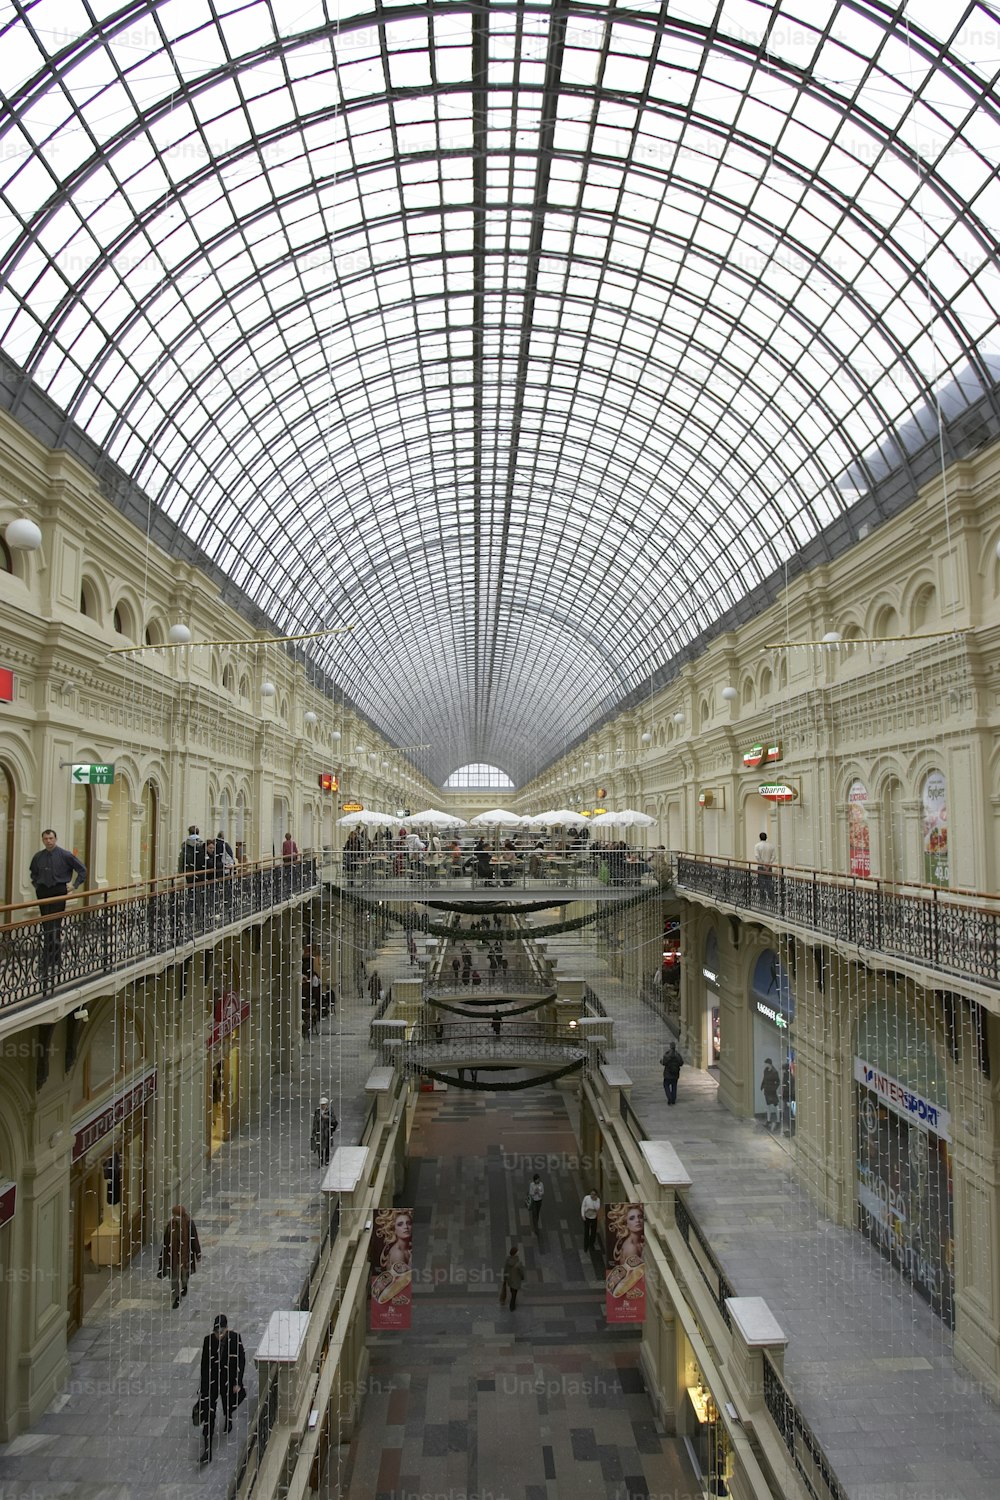 Das große Geschäft in Kitai-gorod von Moskau, mit Blick auf den Roten Platz. Aufgenommen im Jahr 2007.